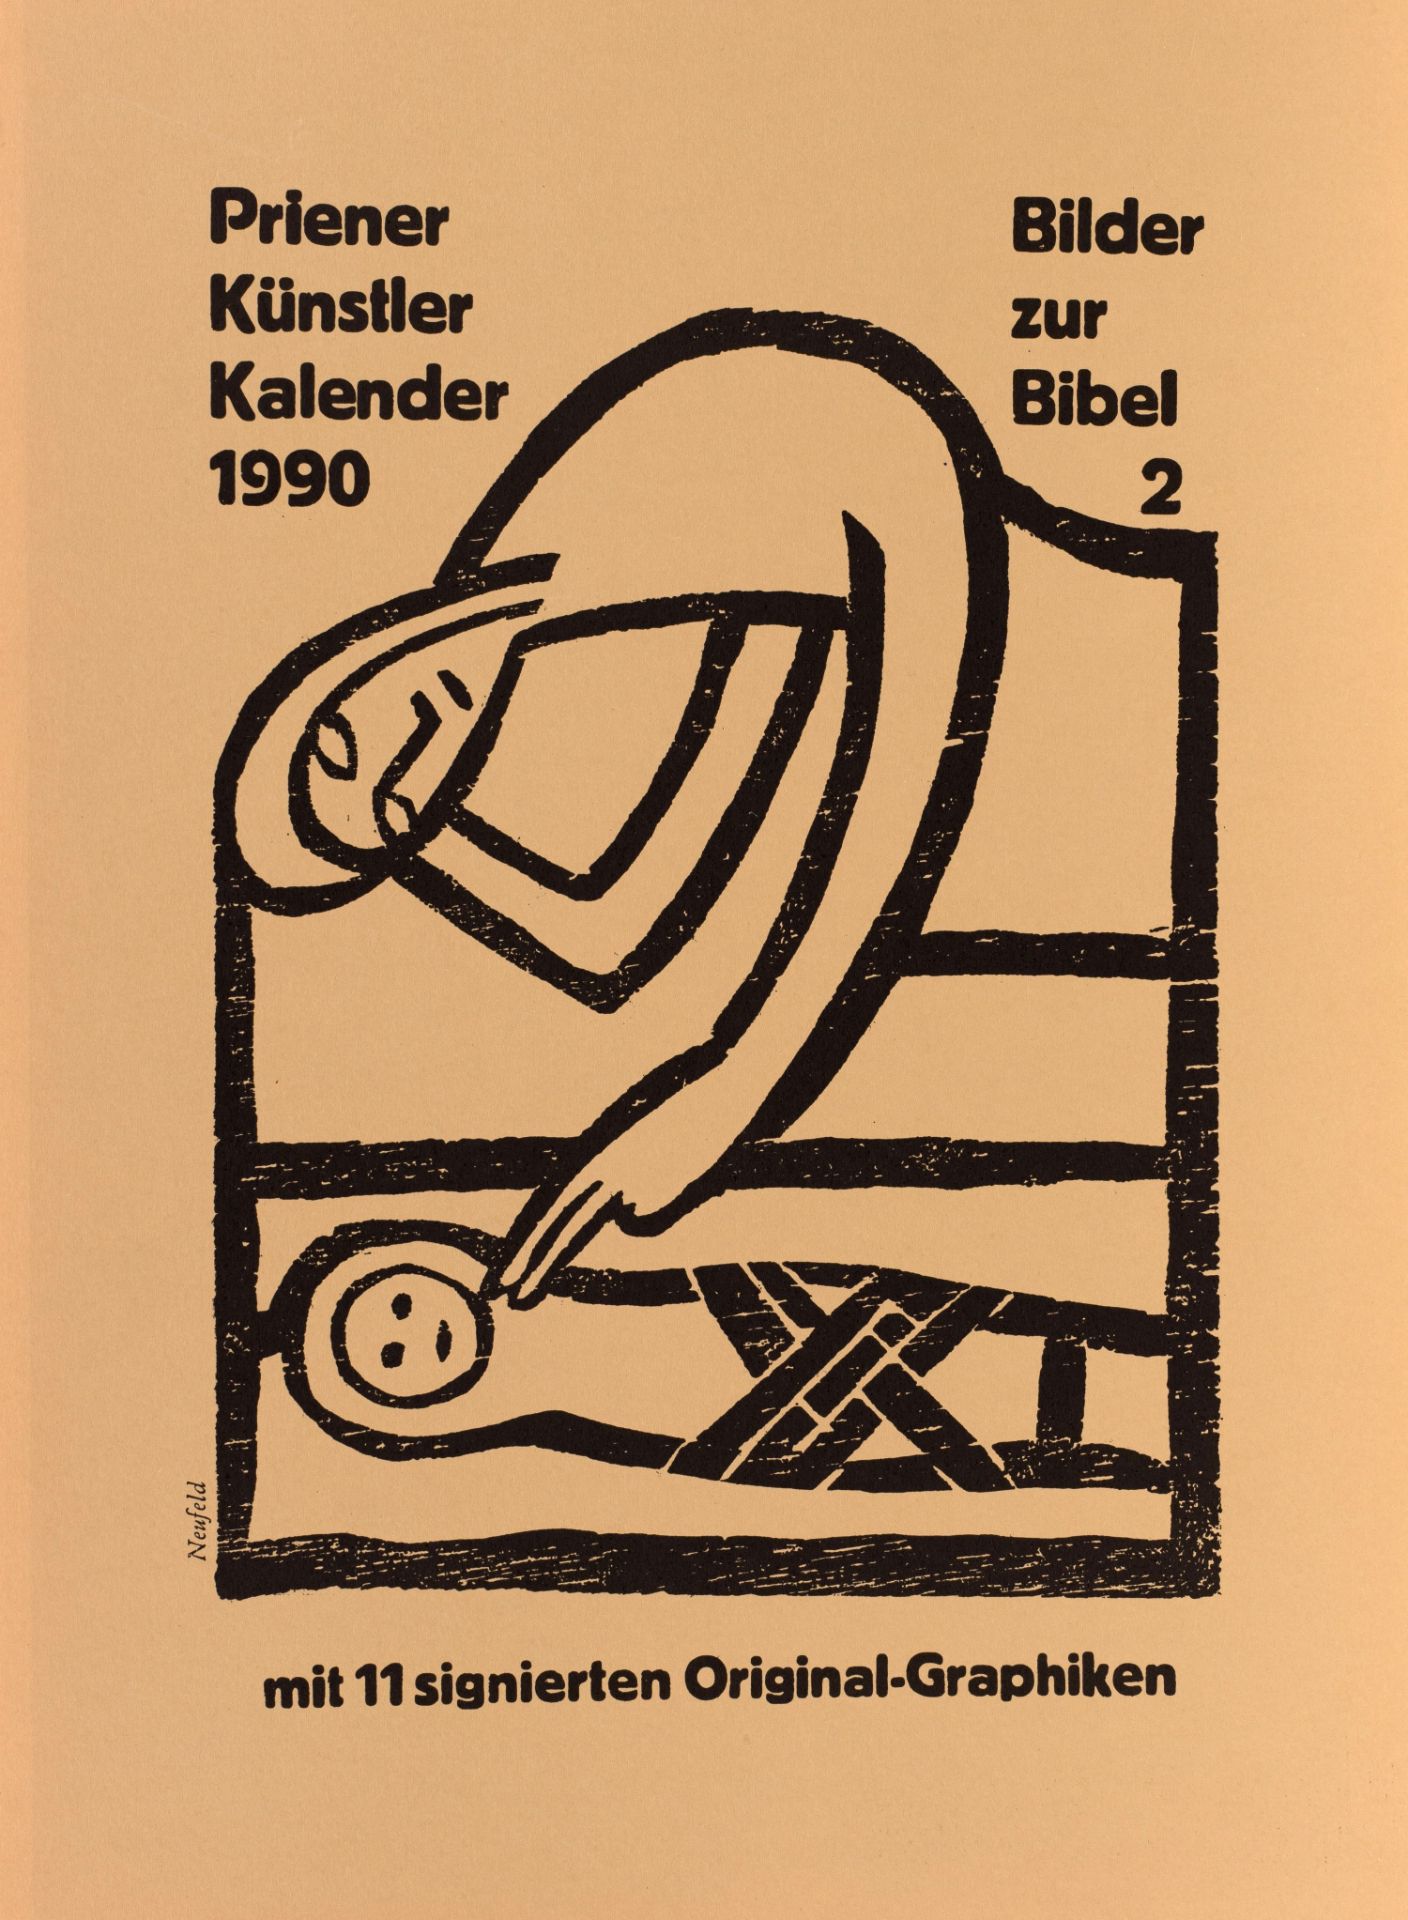 Priener Künstler-Kalender 1990 mit 11 signierten Originalgrafiken